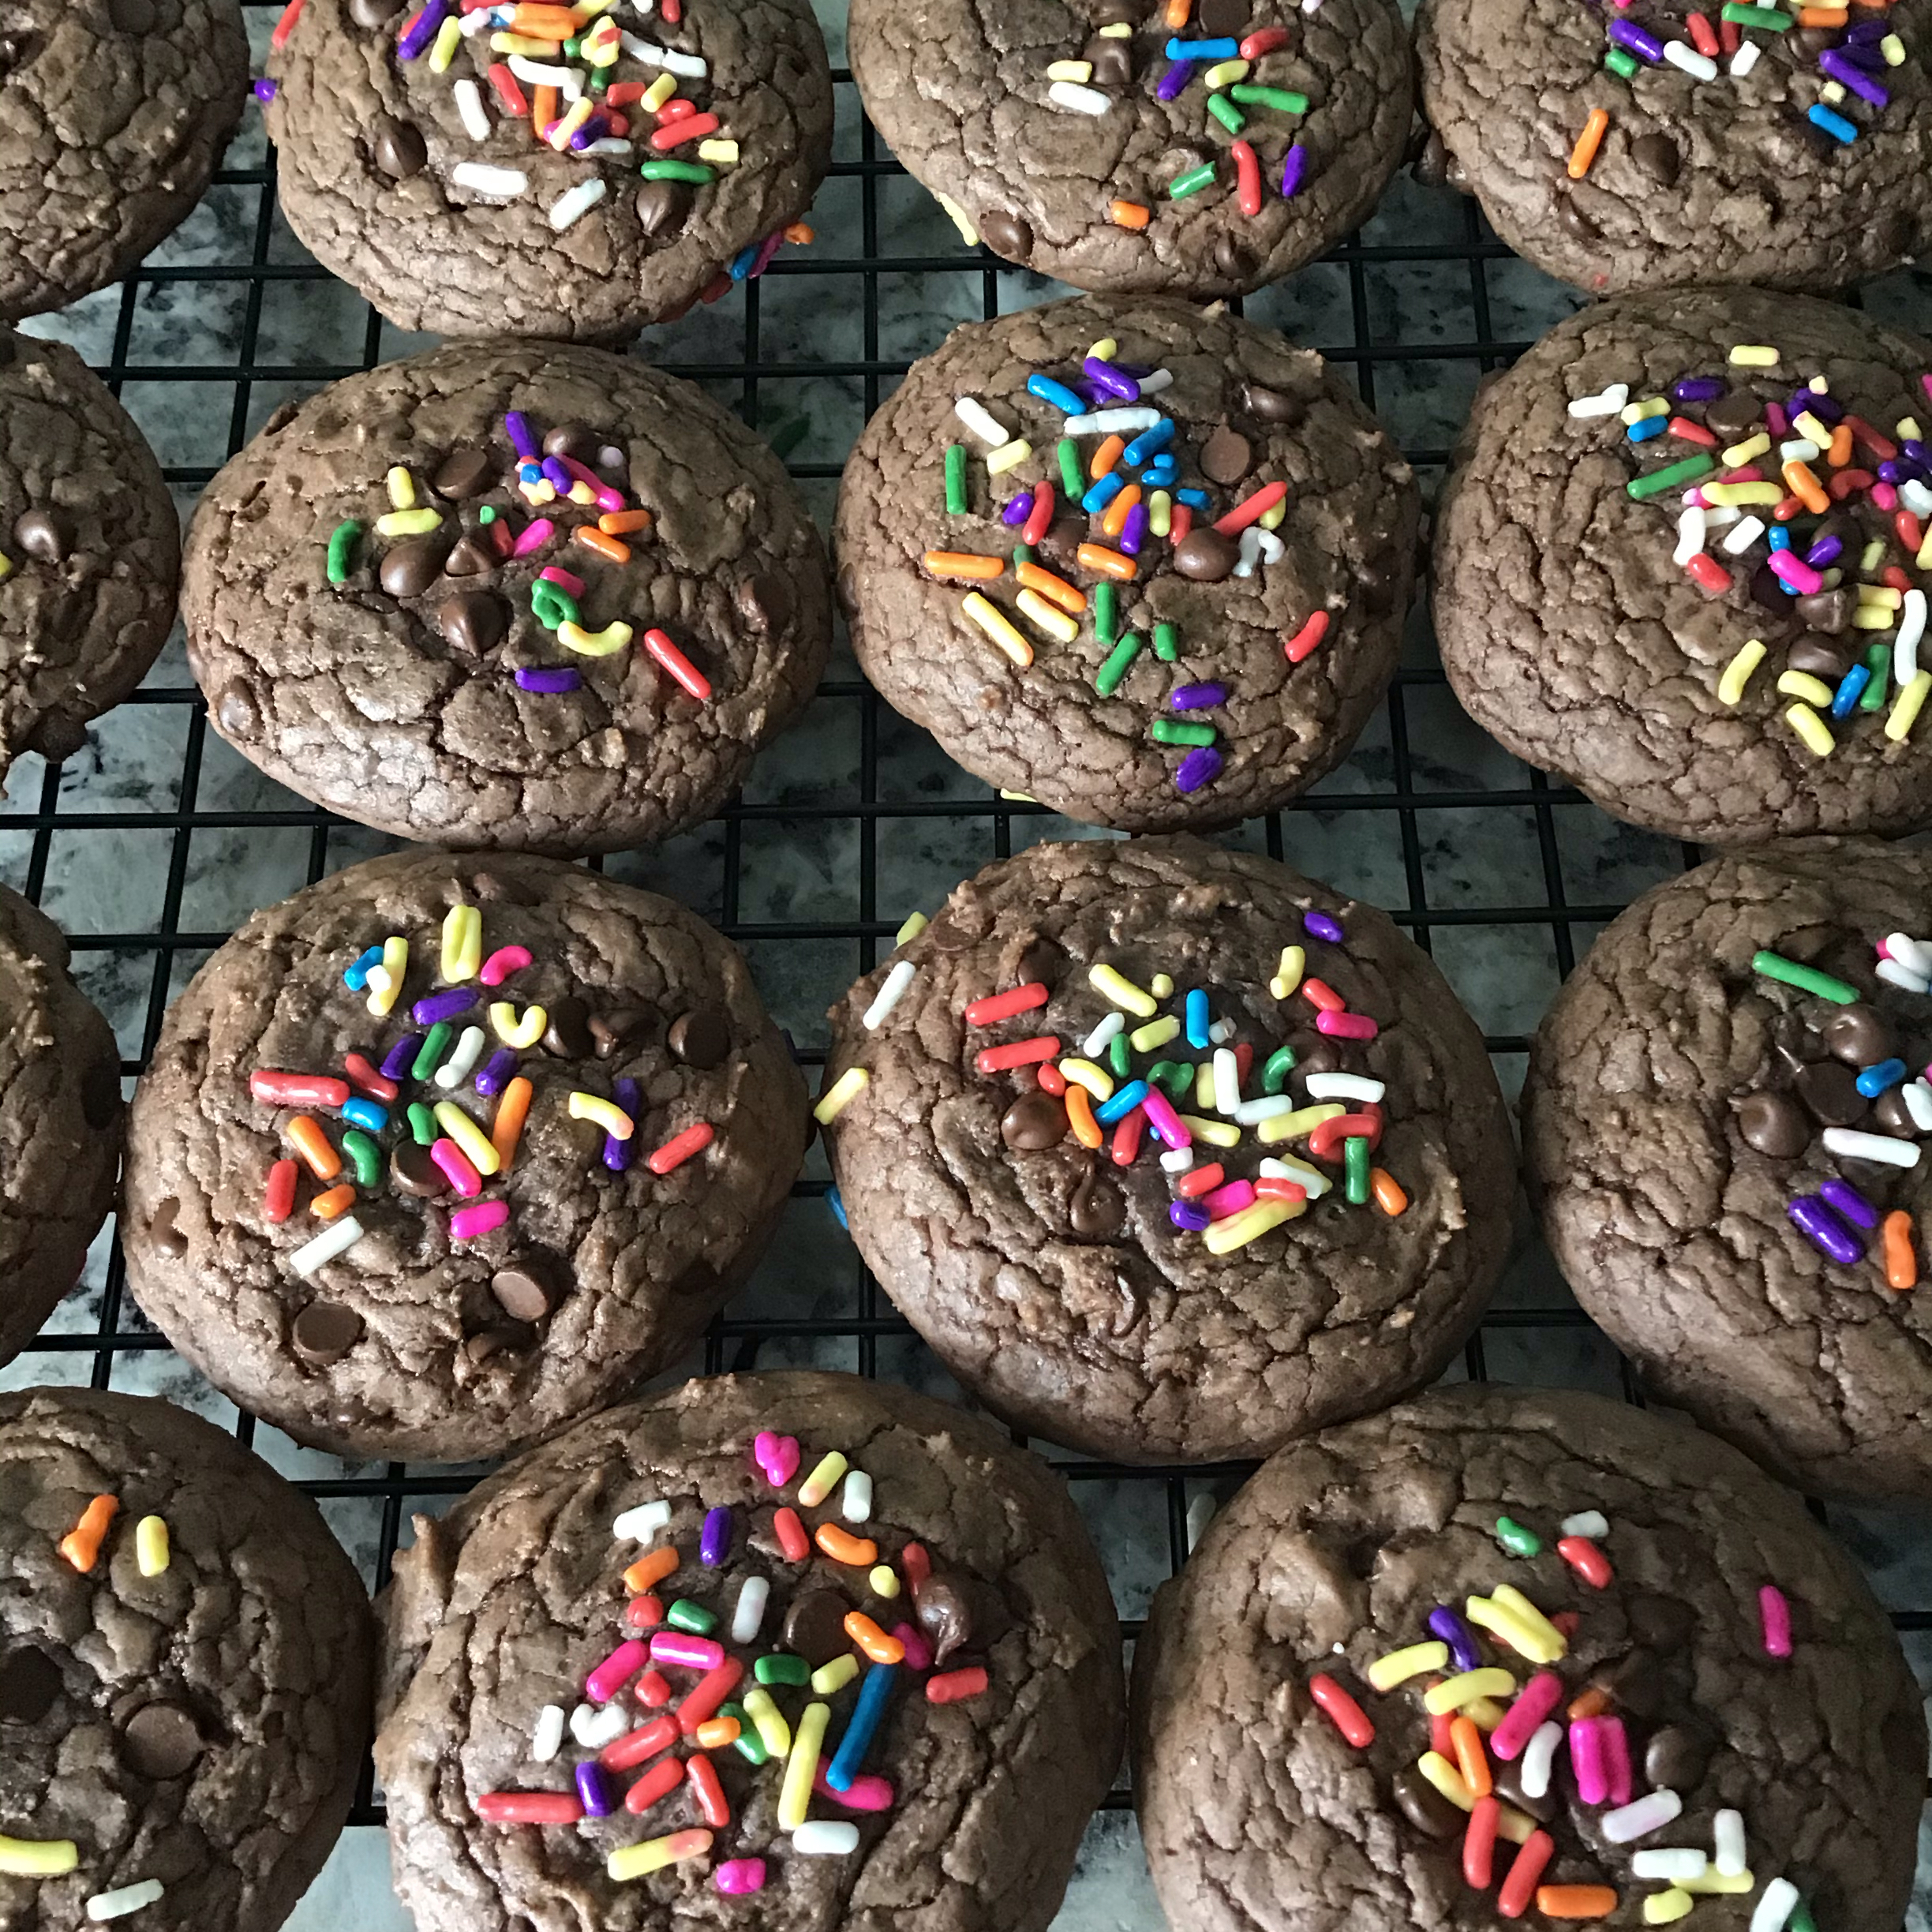 Double Fudge Brownie Cookies 